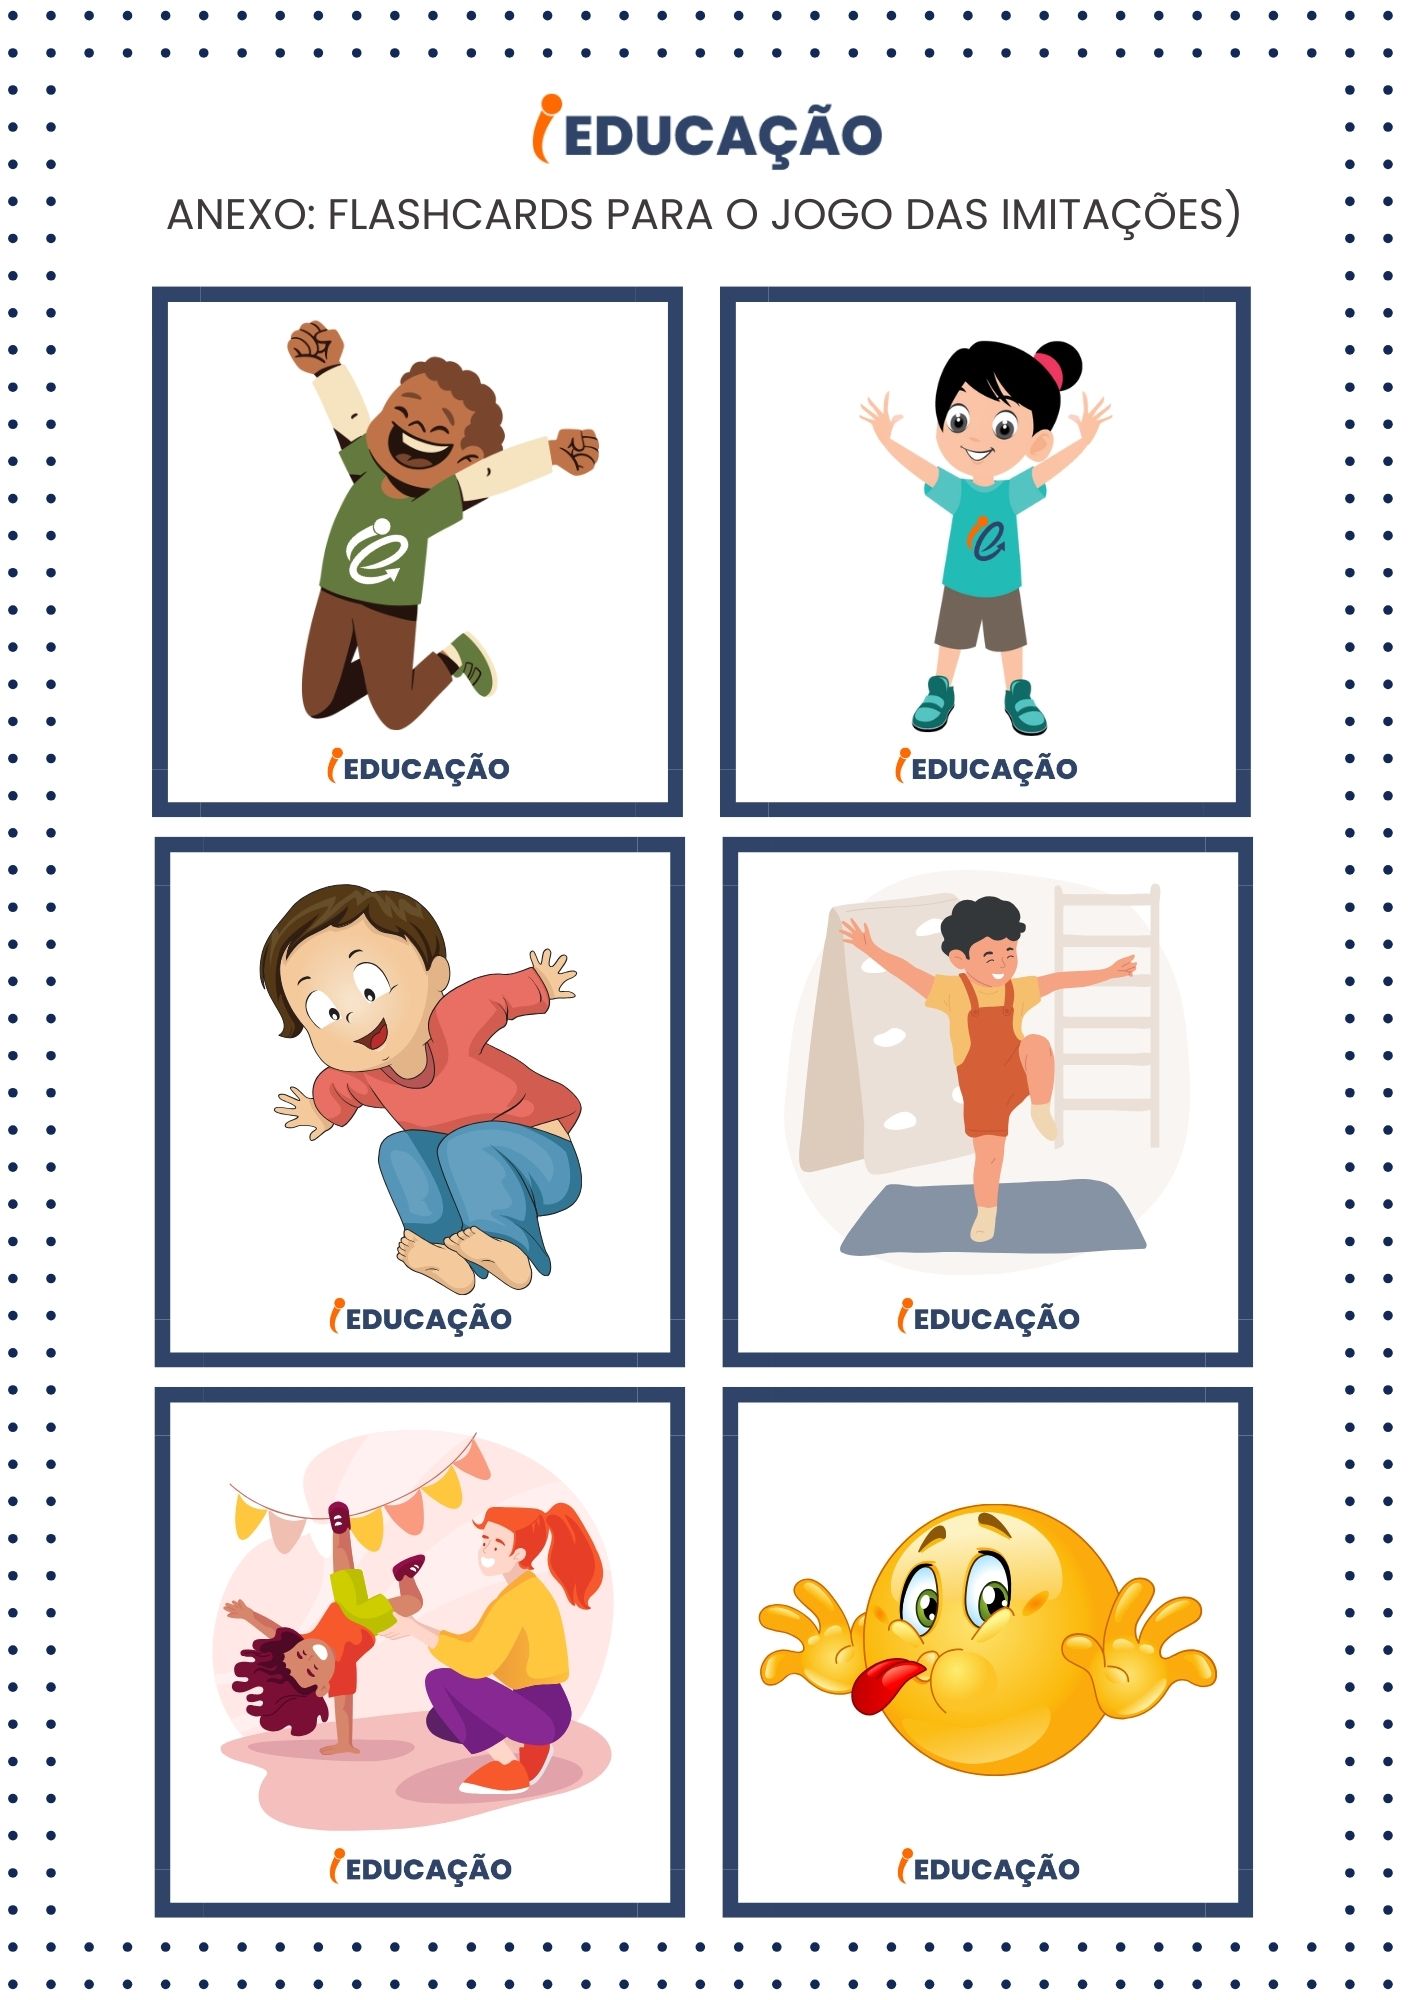 Jogo de imitação para Educação Infantil - Corpo, Gestos e Movimento - Flashcards iEducação - Anexo de Plano de Aula iEducação.jpg